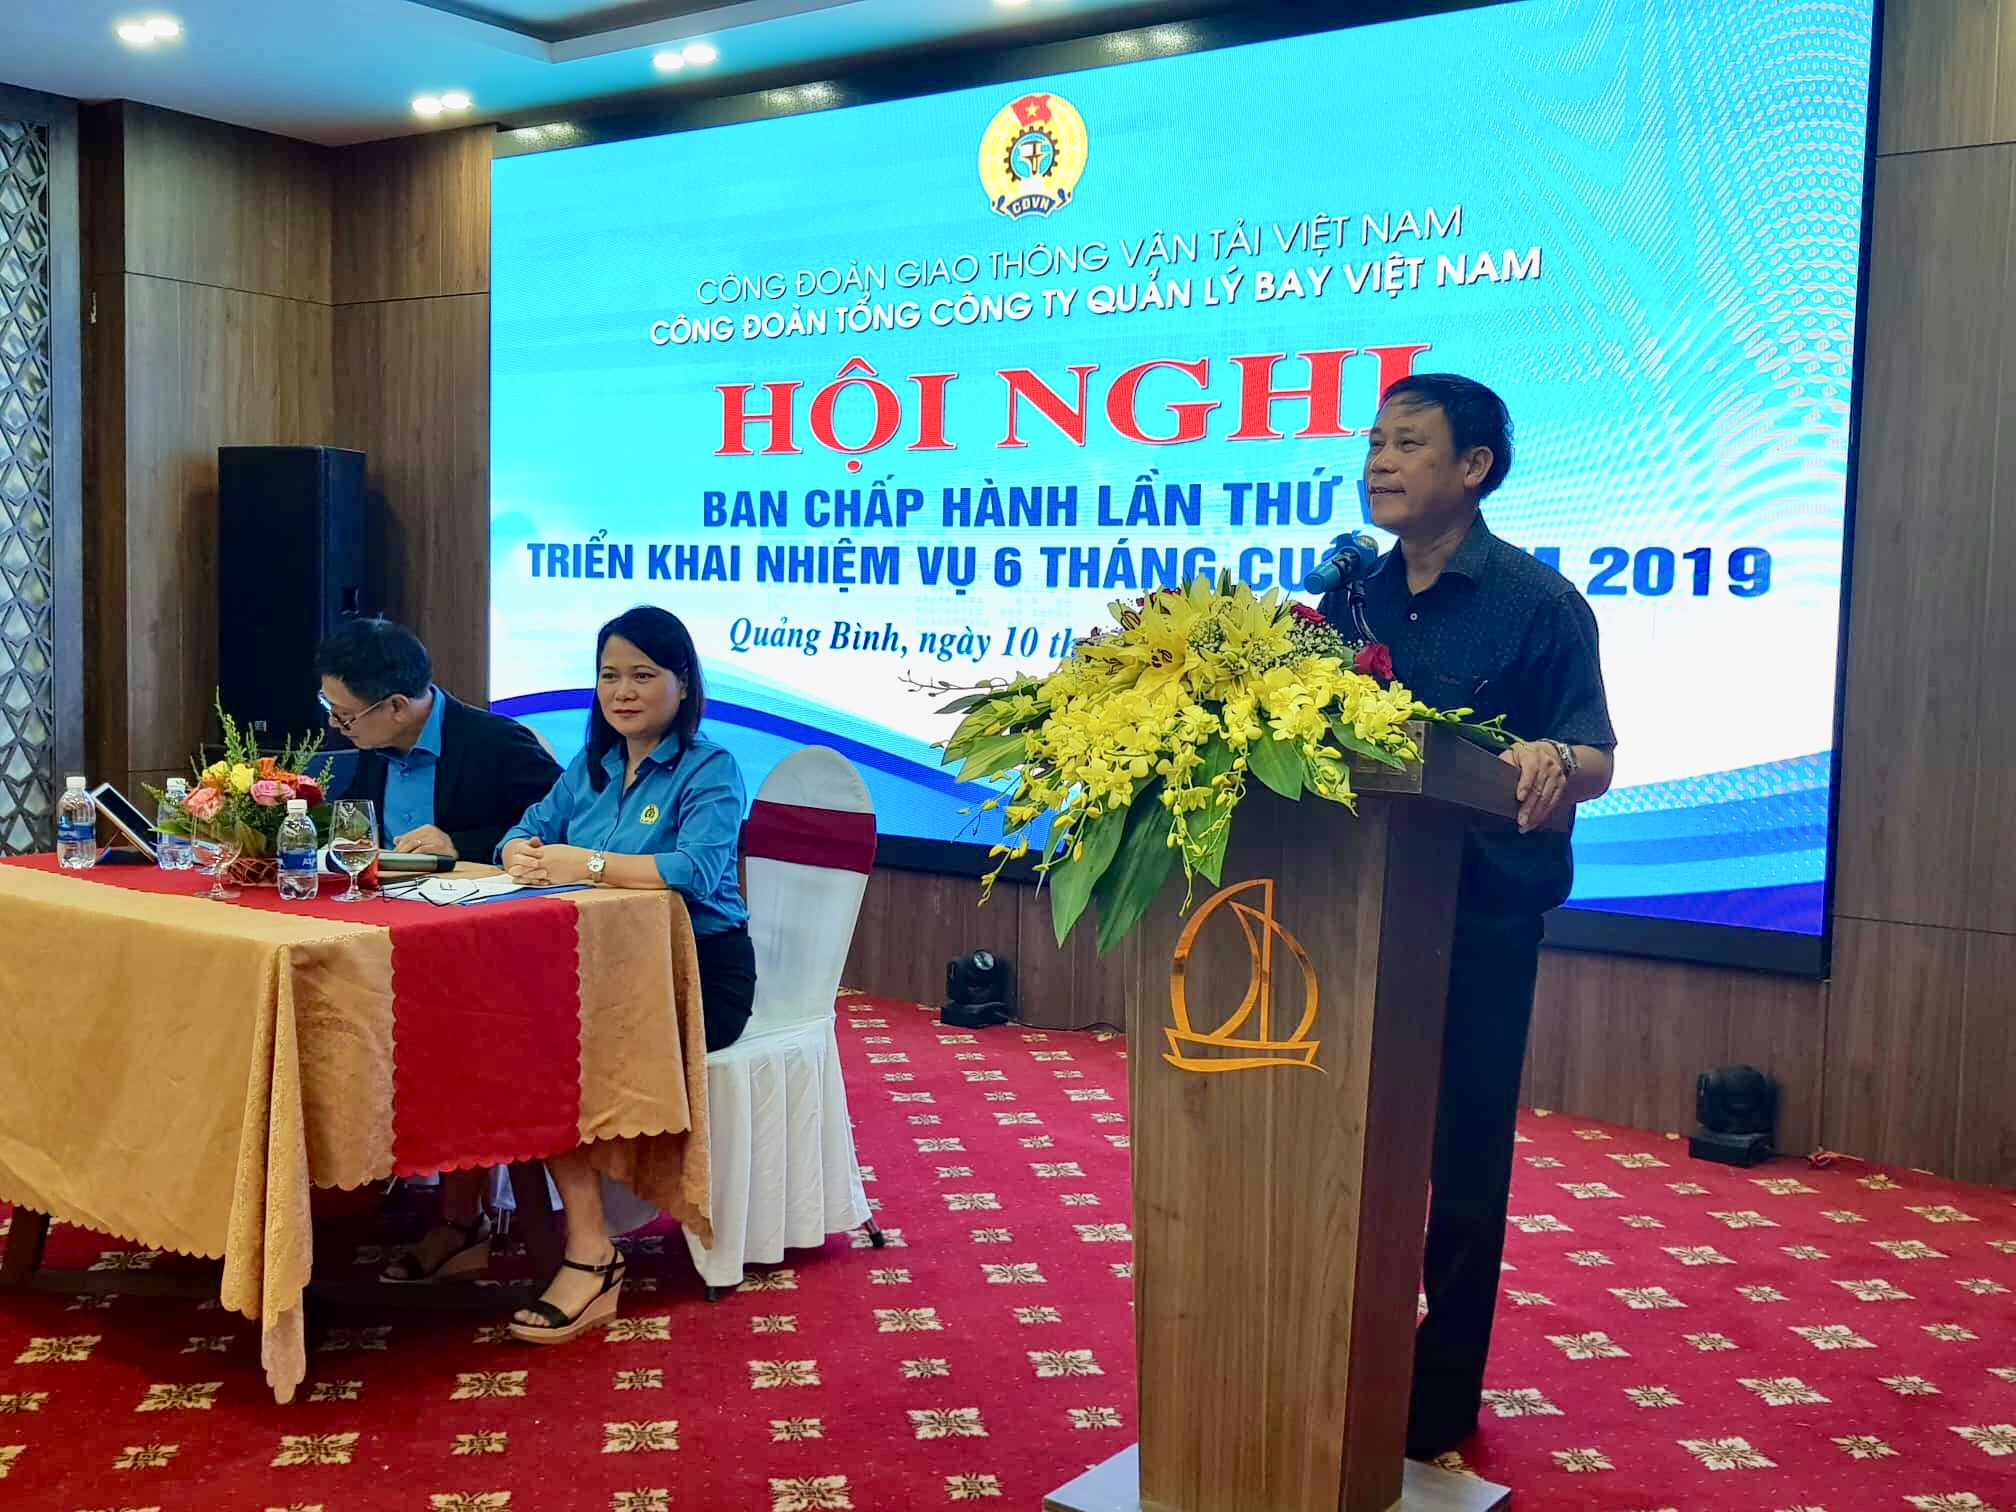 Hội nghị lần thứ VII BCH Công đoàn Tổng công ty Quản lý bay Việt Nam khóa II